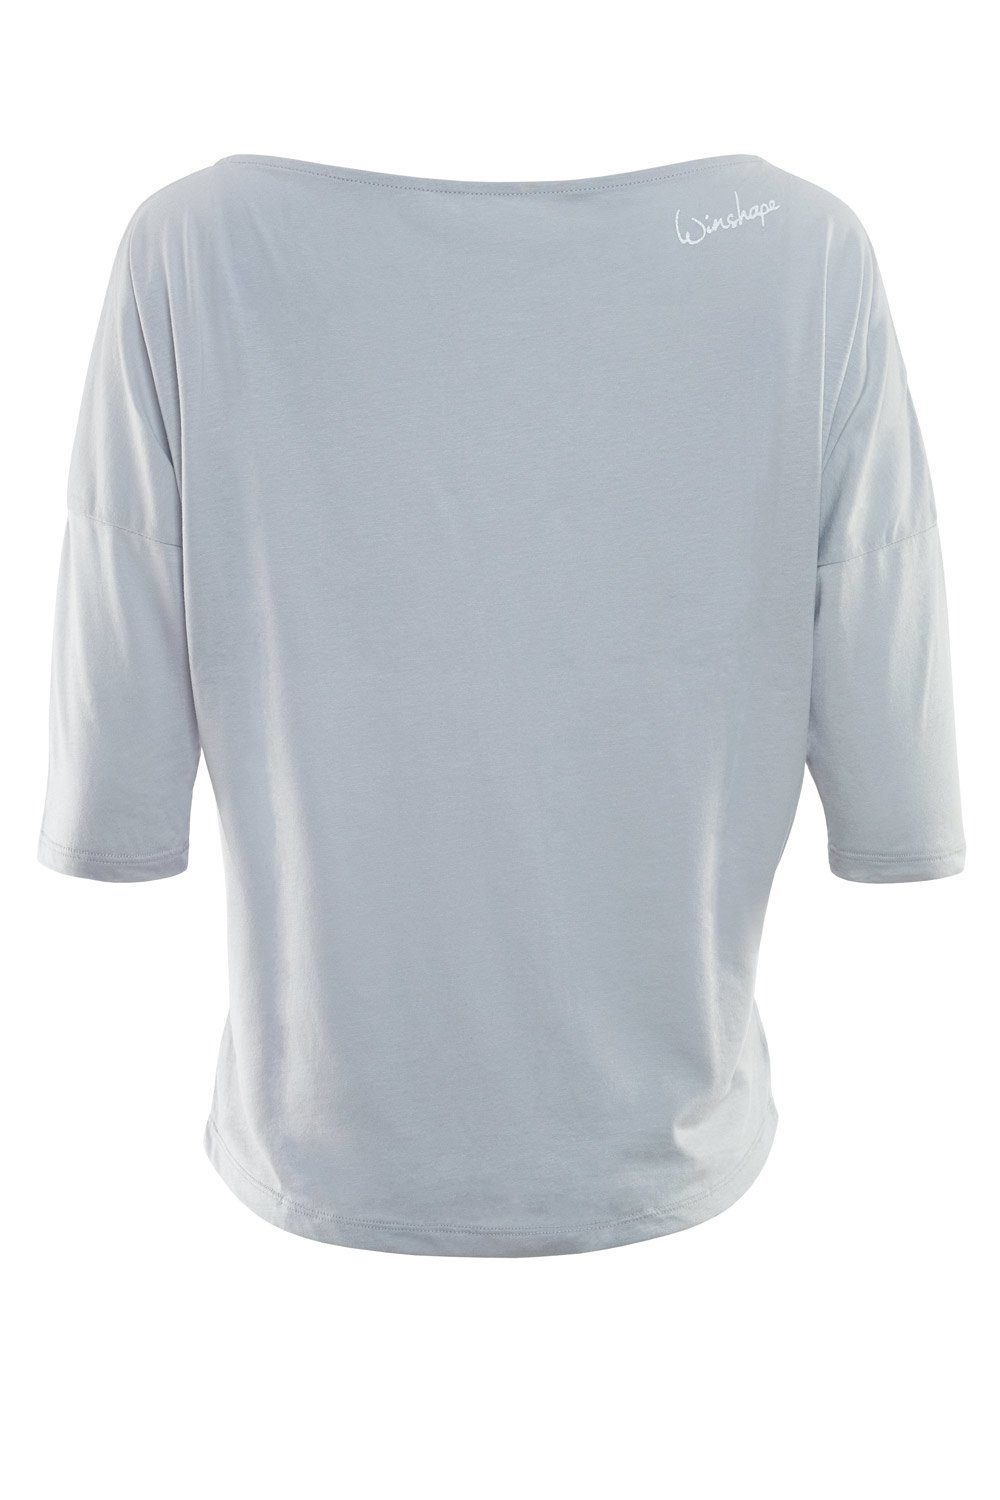 weißem Winshape glitzer weiß cool leicht MCS001 - ultra 3/4-Arm-Shirt Glitzer-Aufdruck grey mit